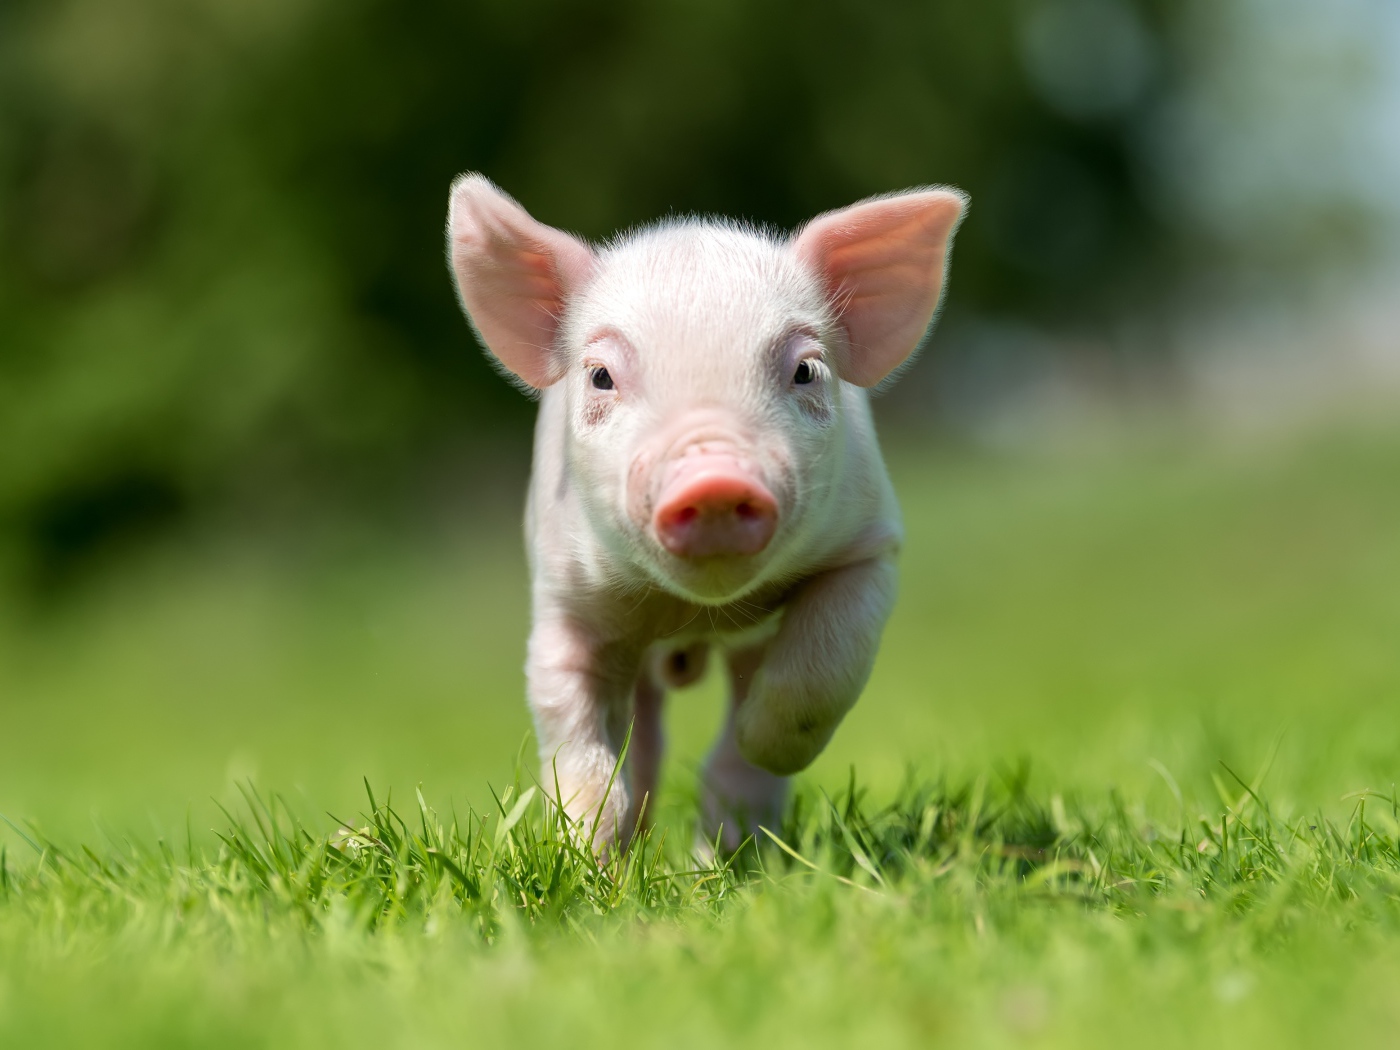 Little pink pig running through green grass